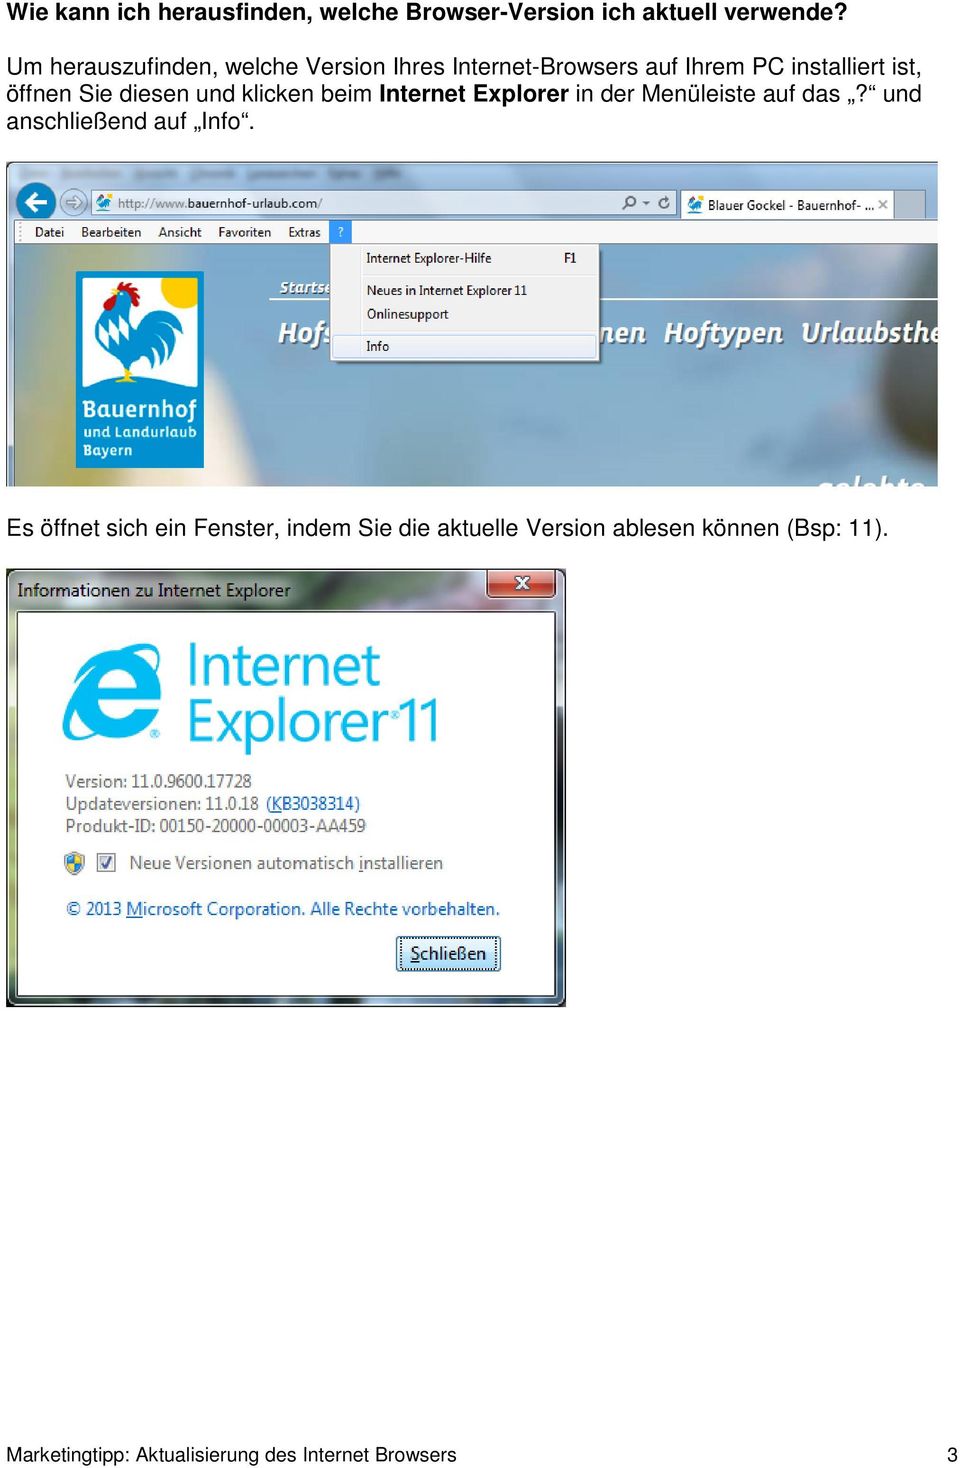 diesen und klicken beim Internet Explorer in der Menüleiste auf das? und anschließend auf Info.